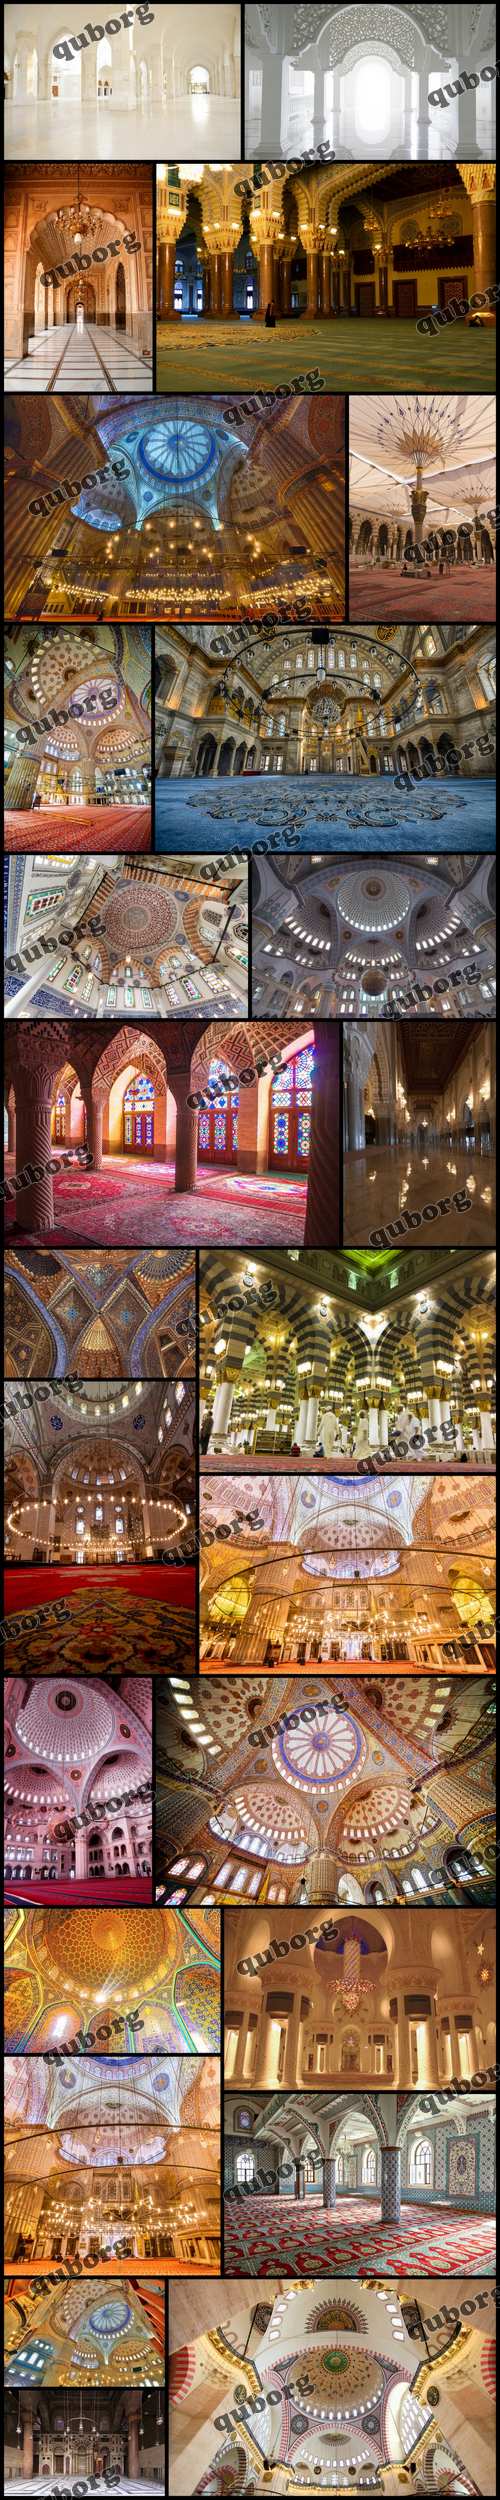 Stock Photos - Mosque Interior